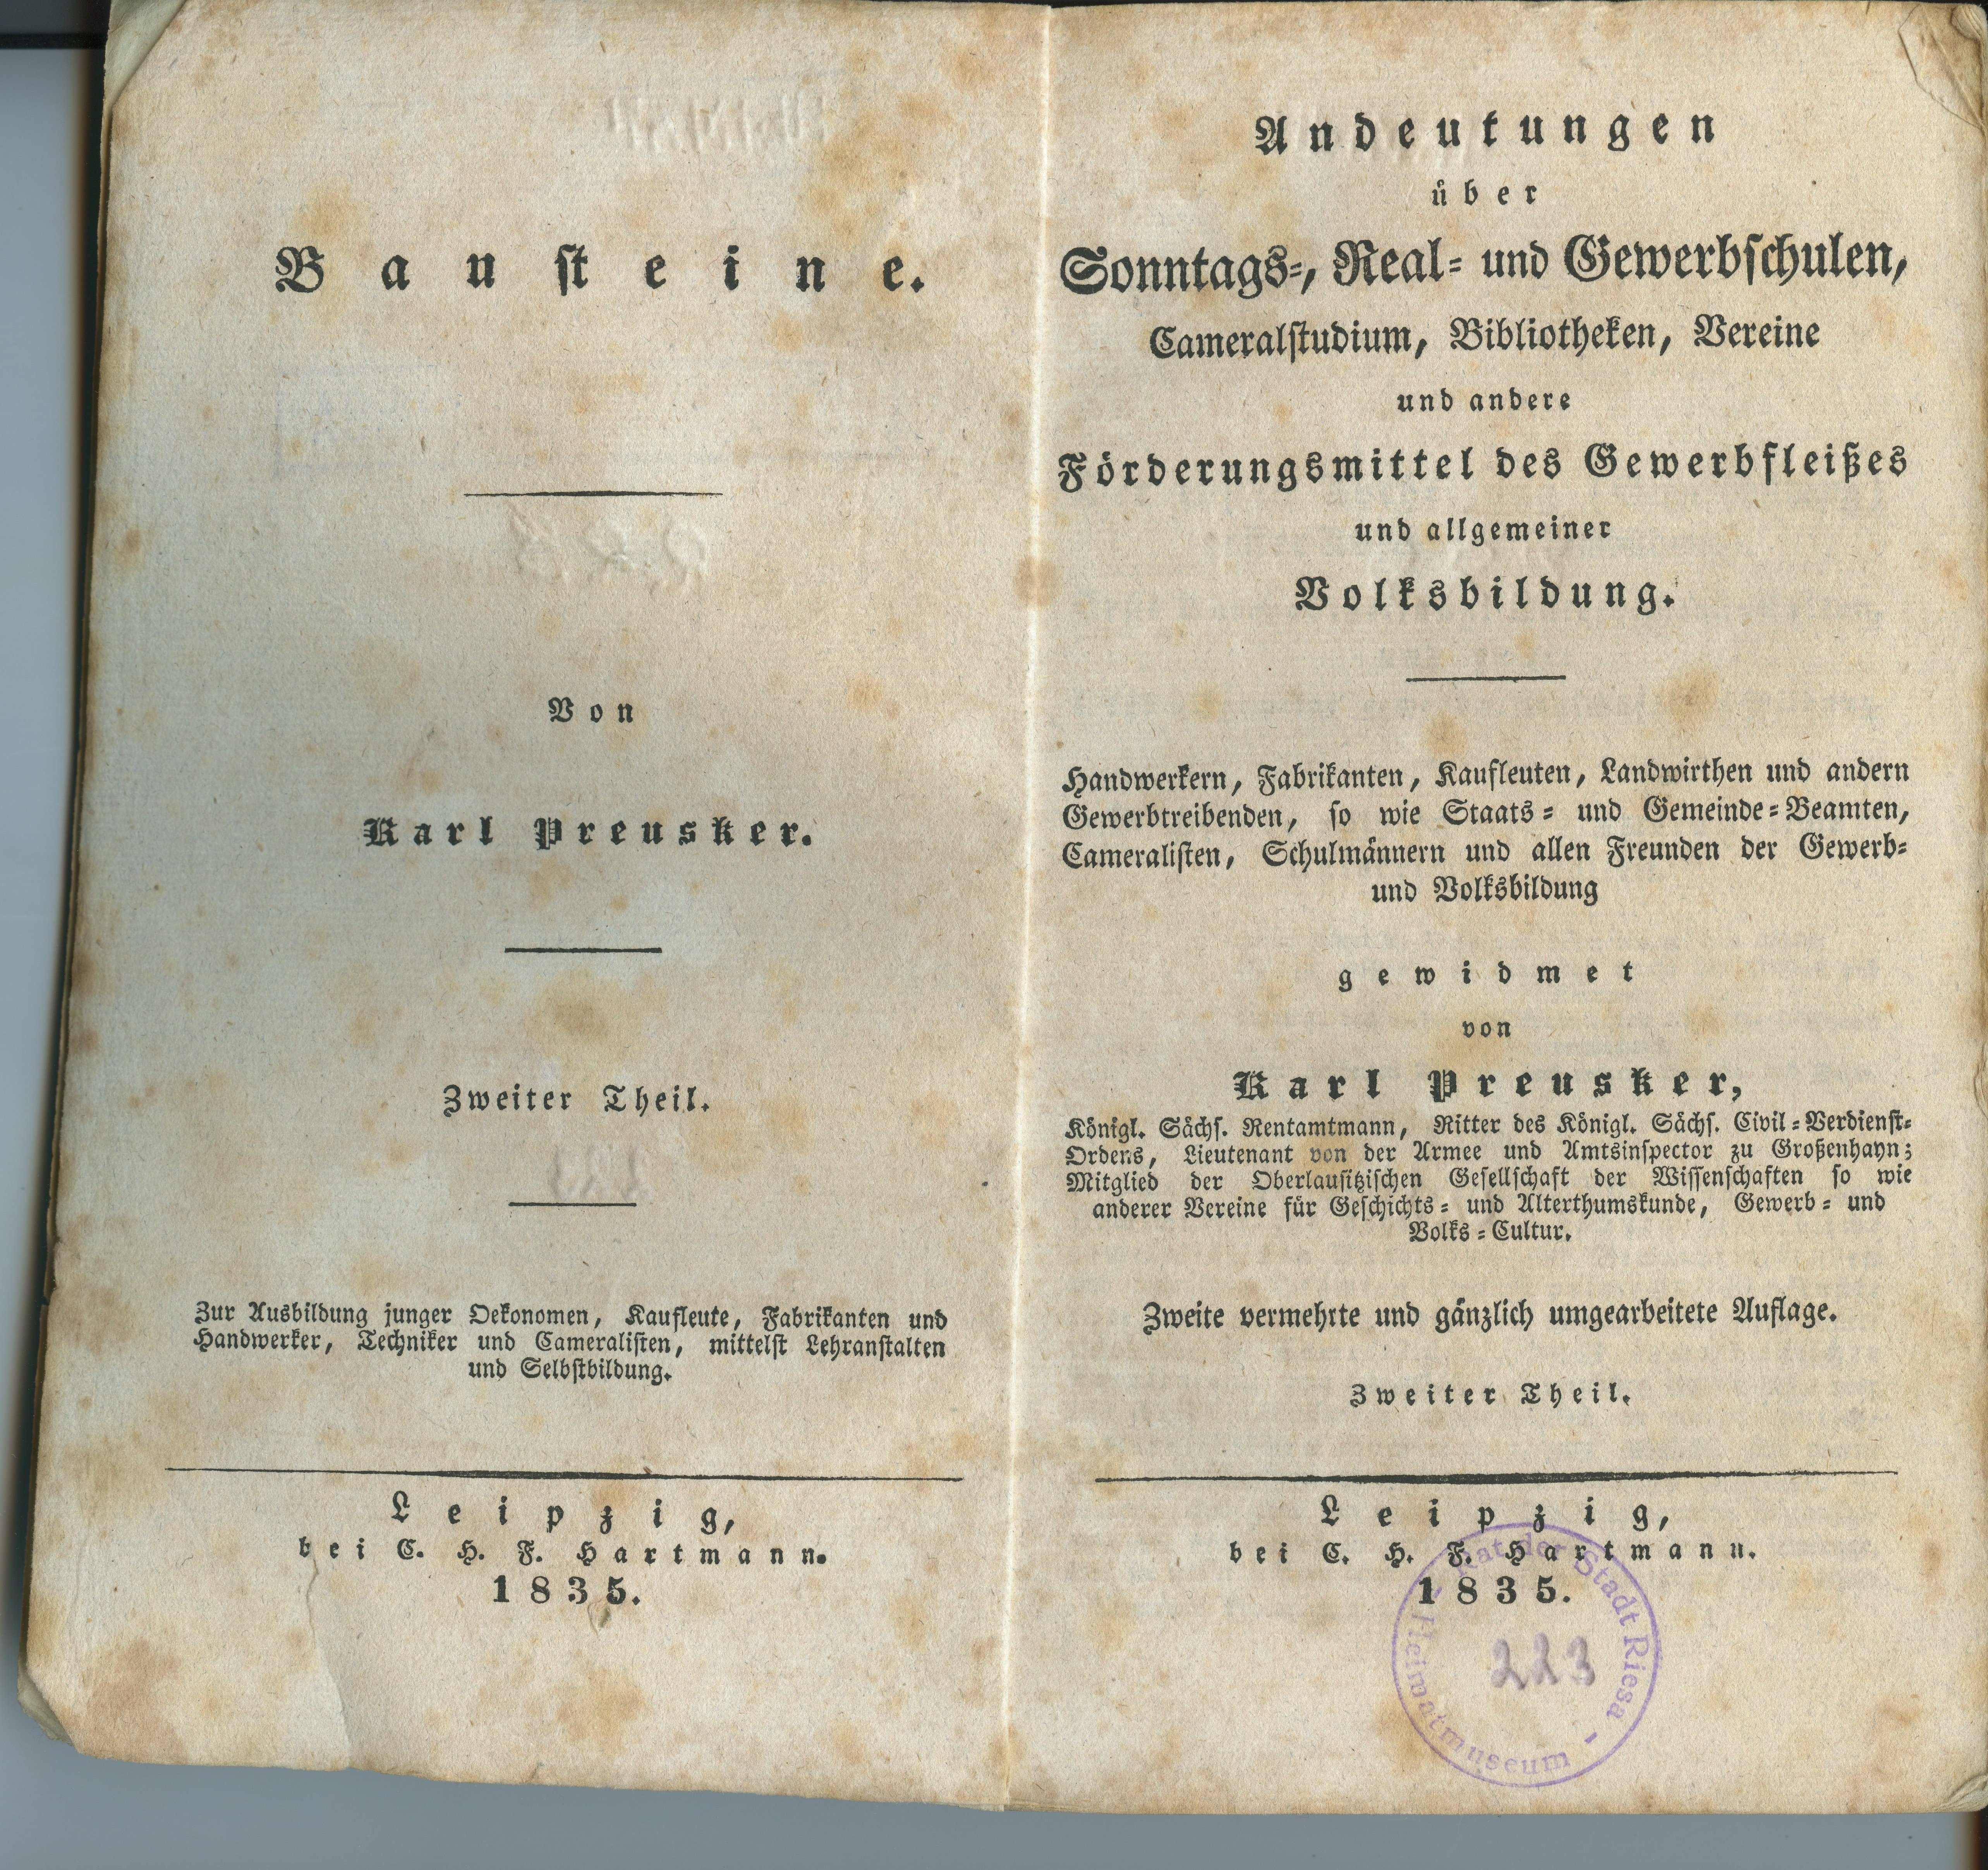 Preusker, Karl: Andeutungen über Sonntags-, Real- und Gewerbschulen [...], Teil 2, 2. Auflage 1835 (Museum Alte Lateinschule CC BY-NC-SA)